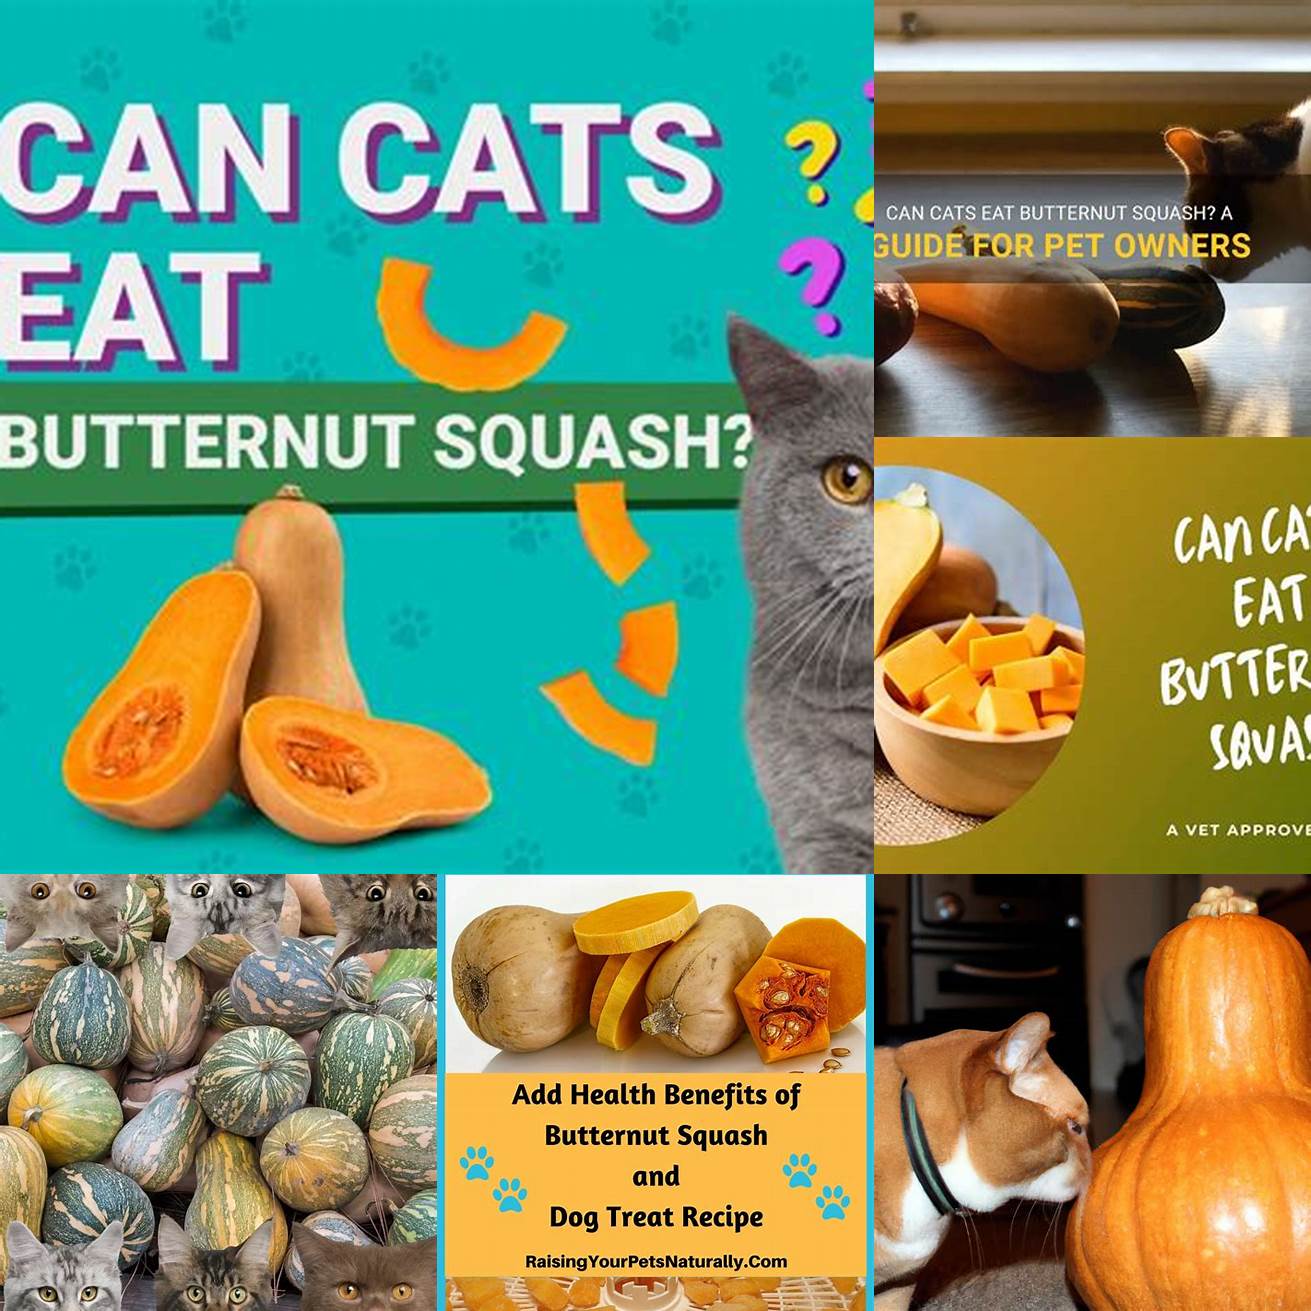 5 Should butternut squash be a regular part of a cats diet